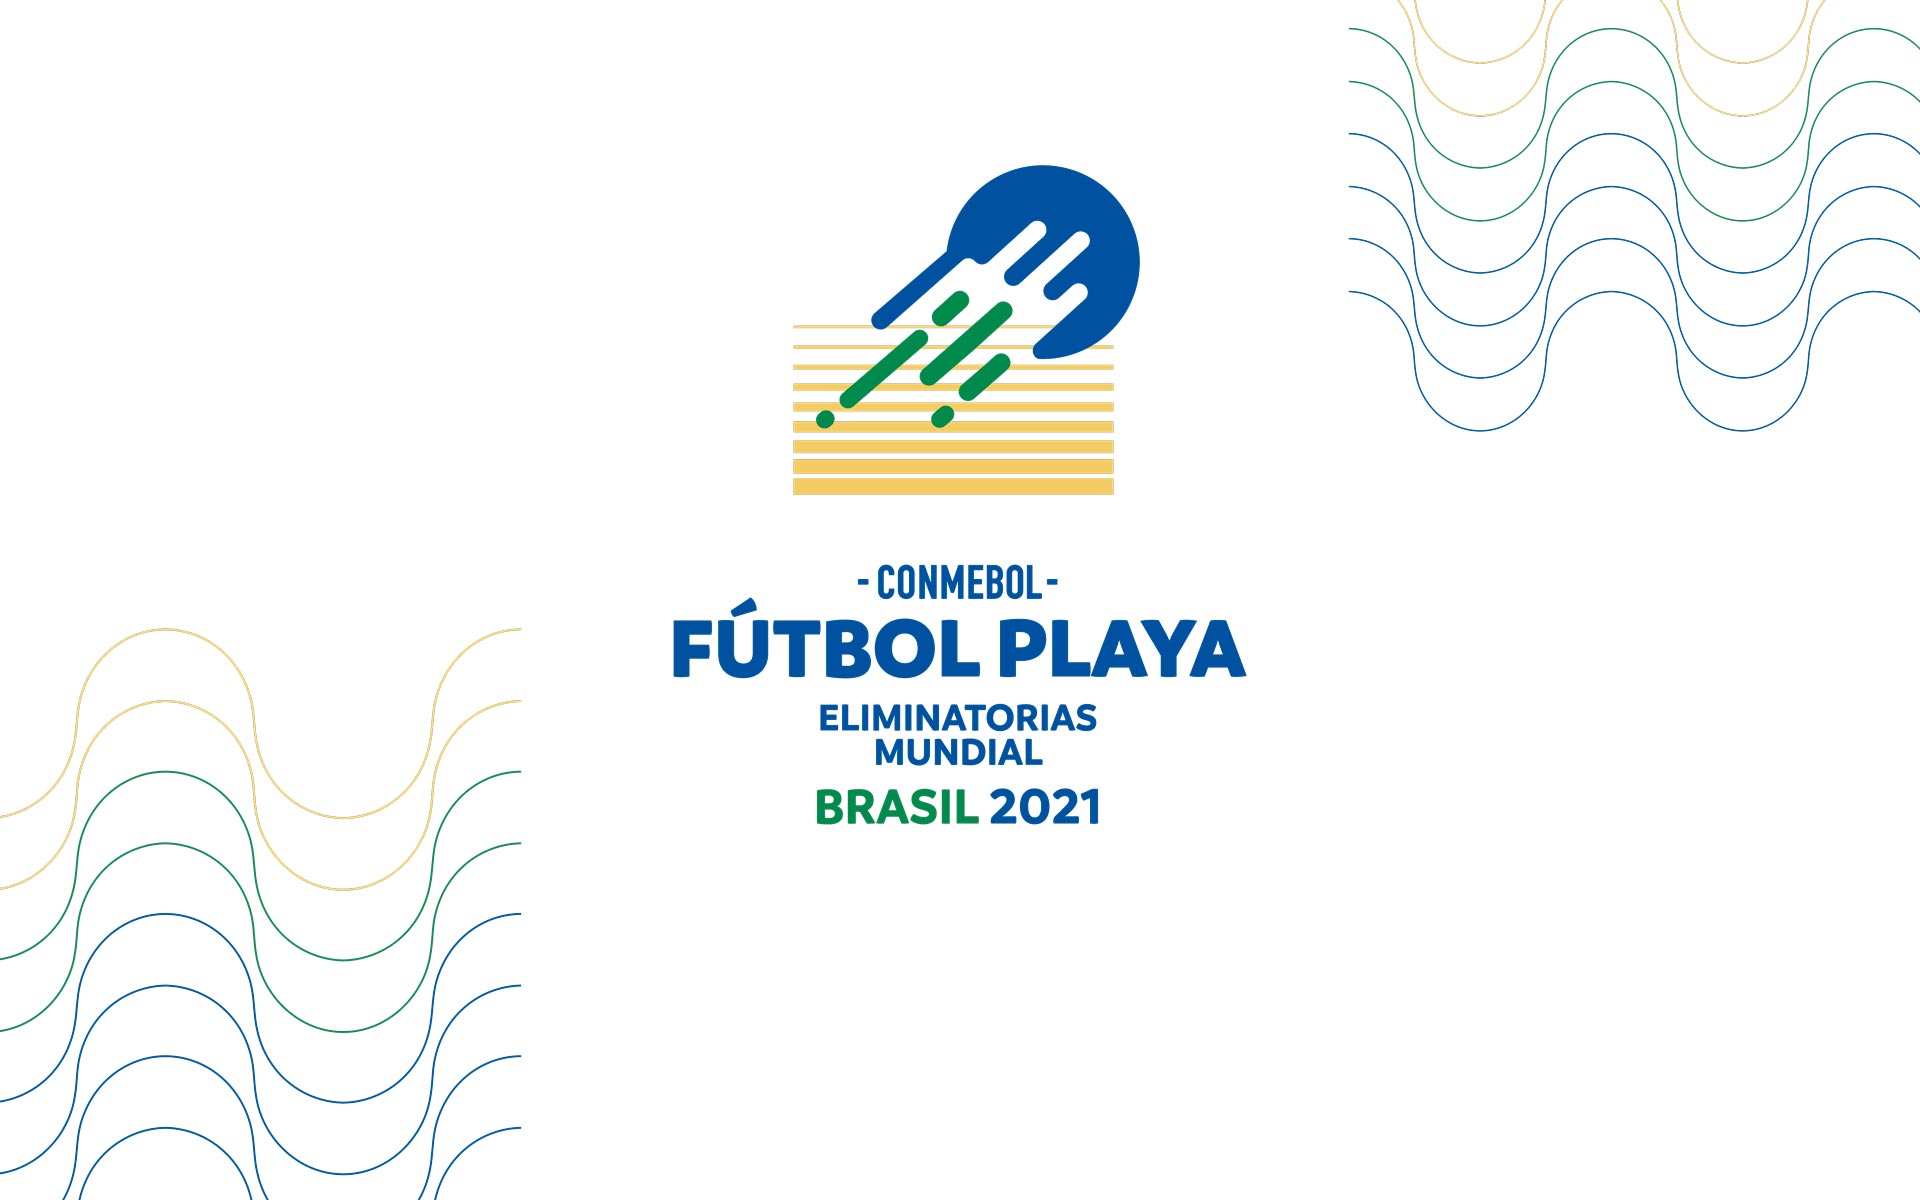 Eliminatorias Mundial Fútbol Playa 2021 CONMEBOL